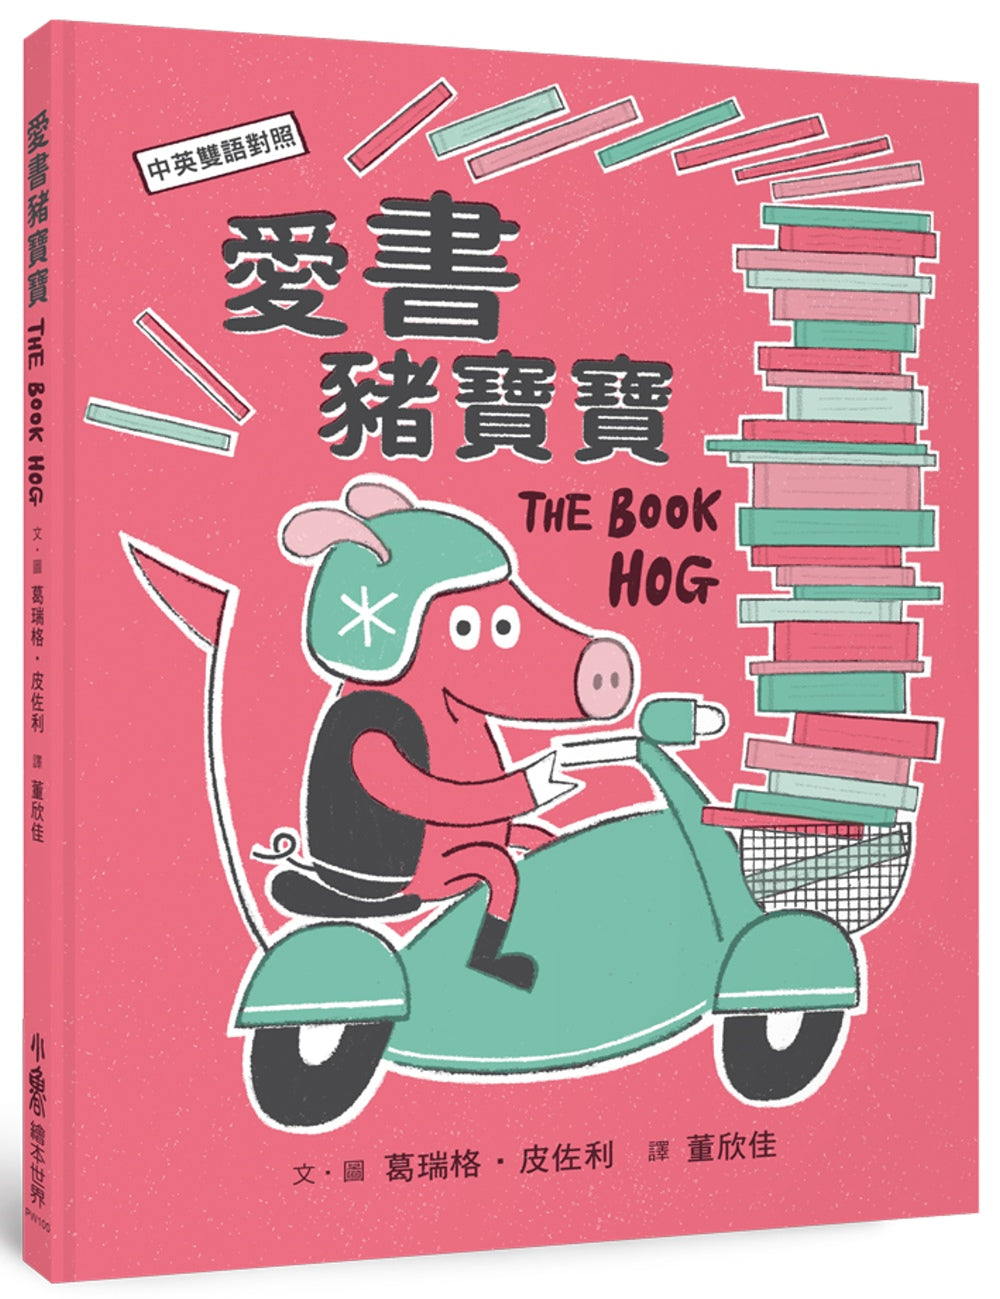 The Book Hog • 愛書豬寶寶